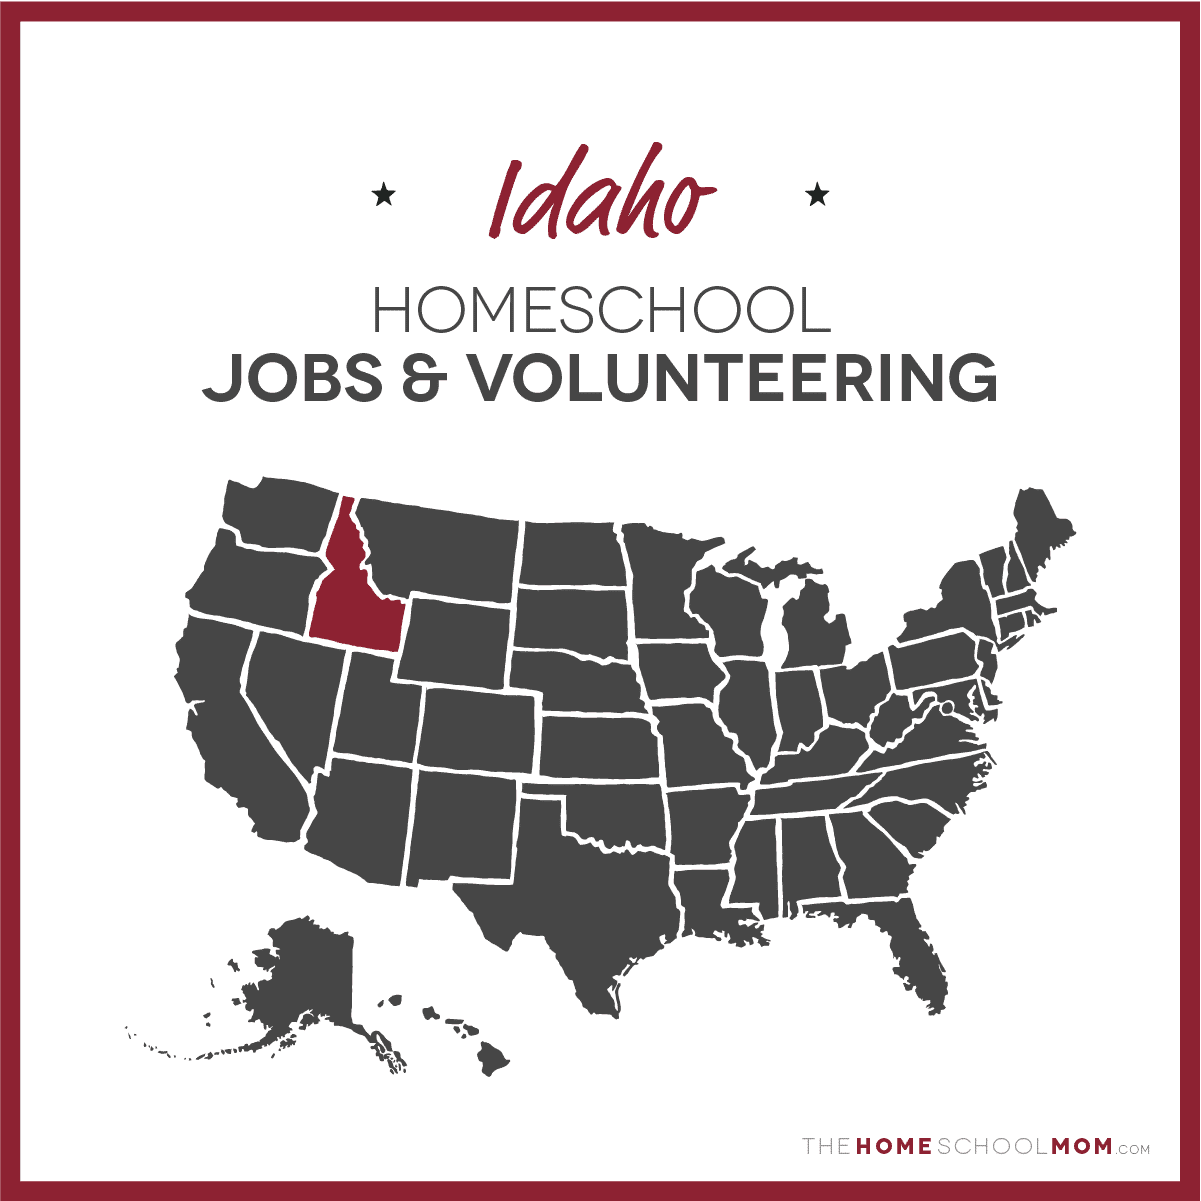 Idaho Homeschool Jobs & Volunteering